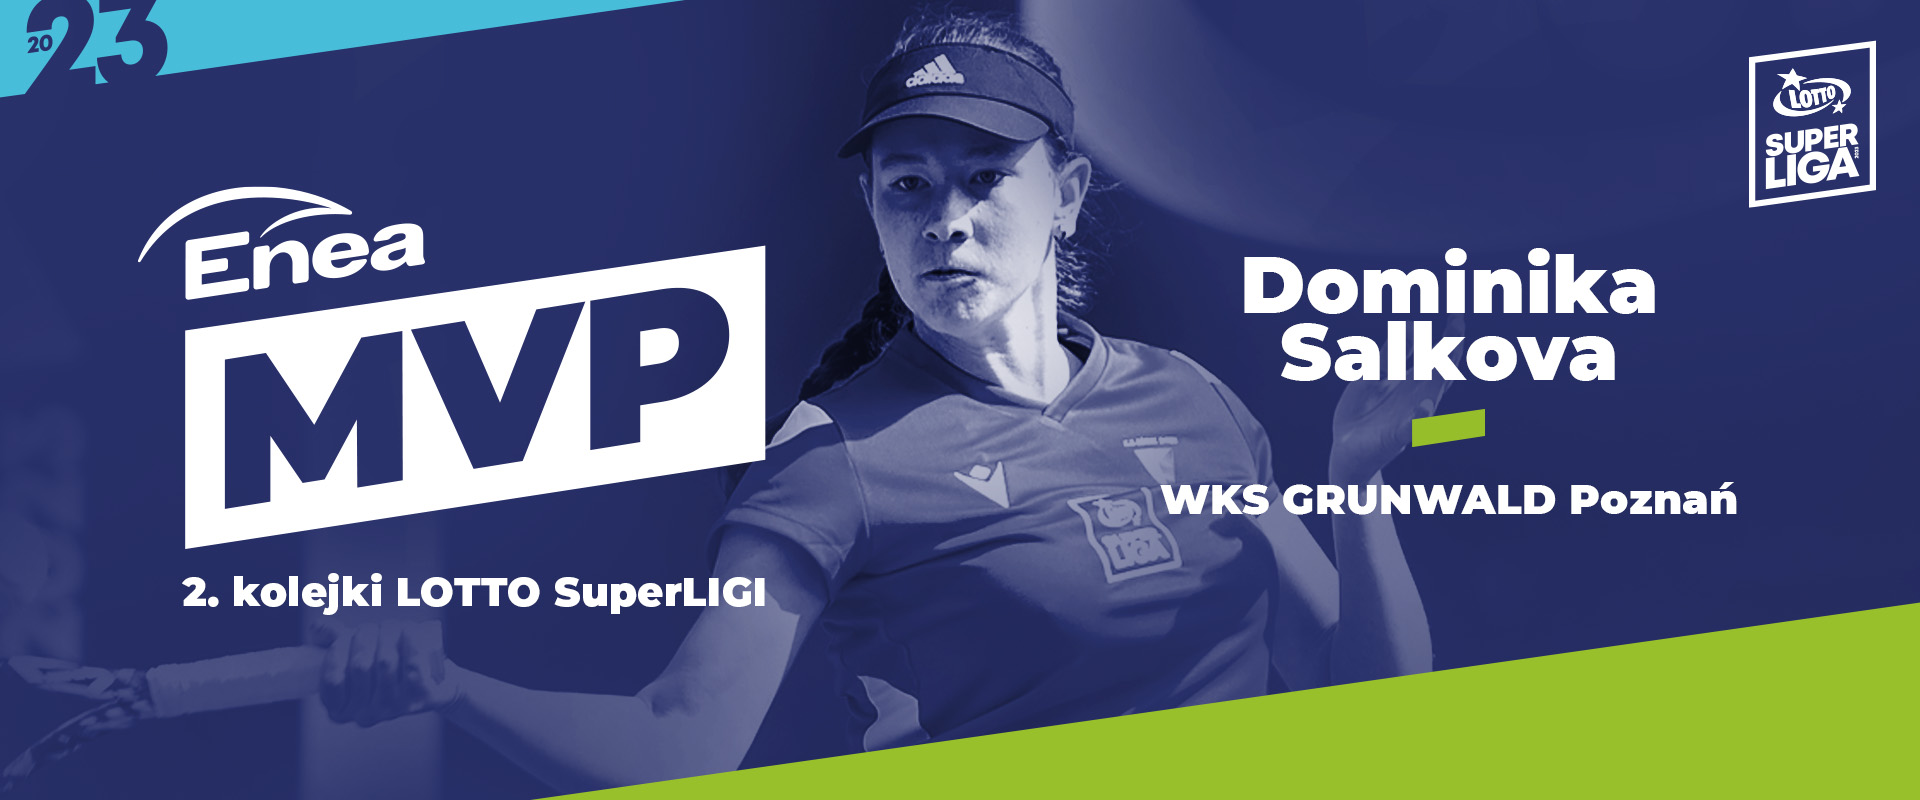 Dominika Šalková - Enea MVP 2. kola